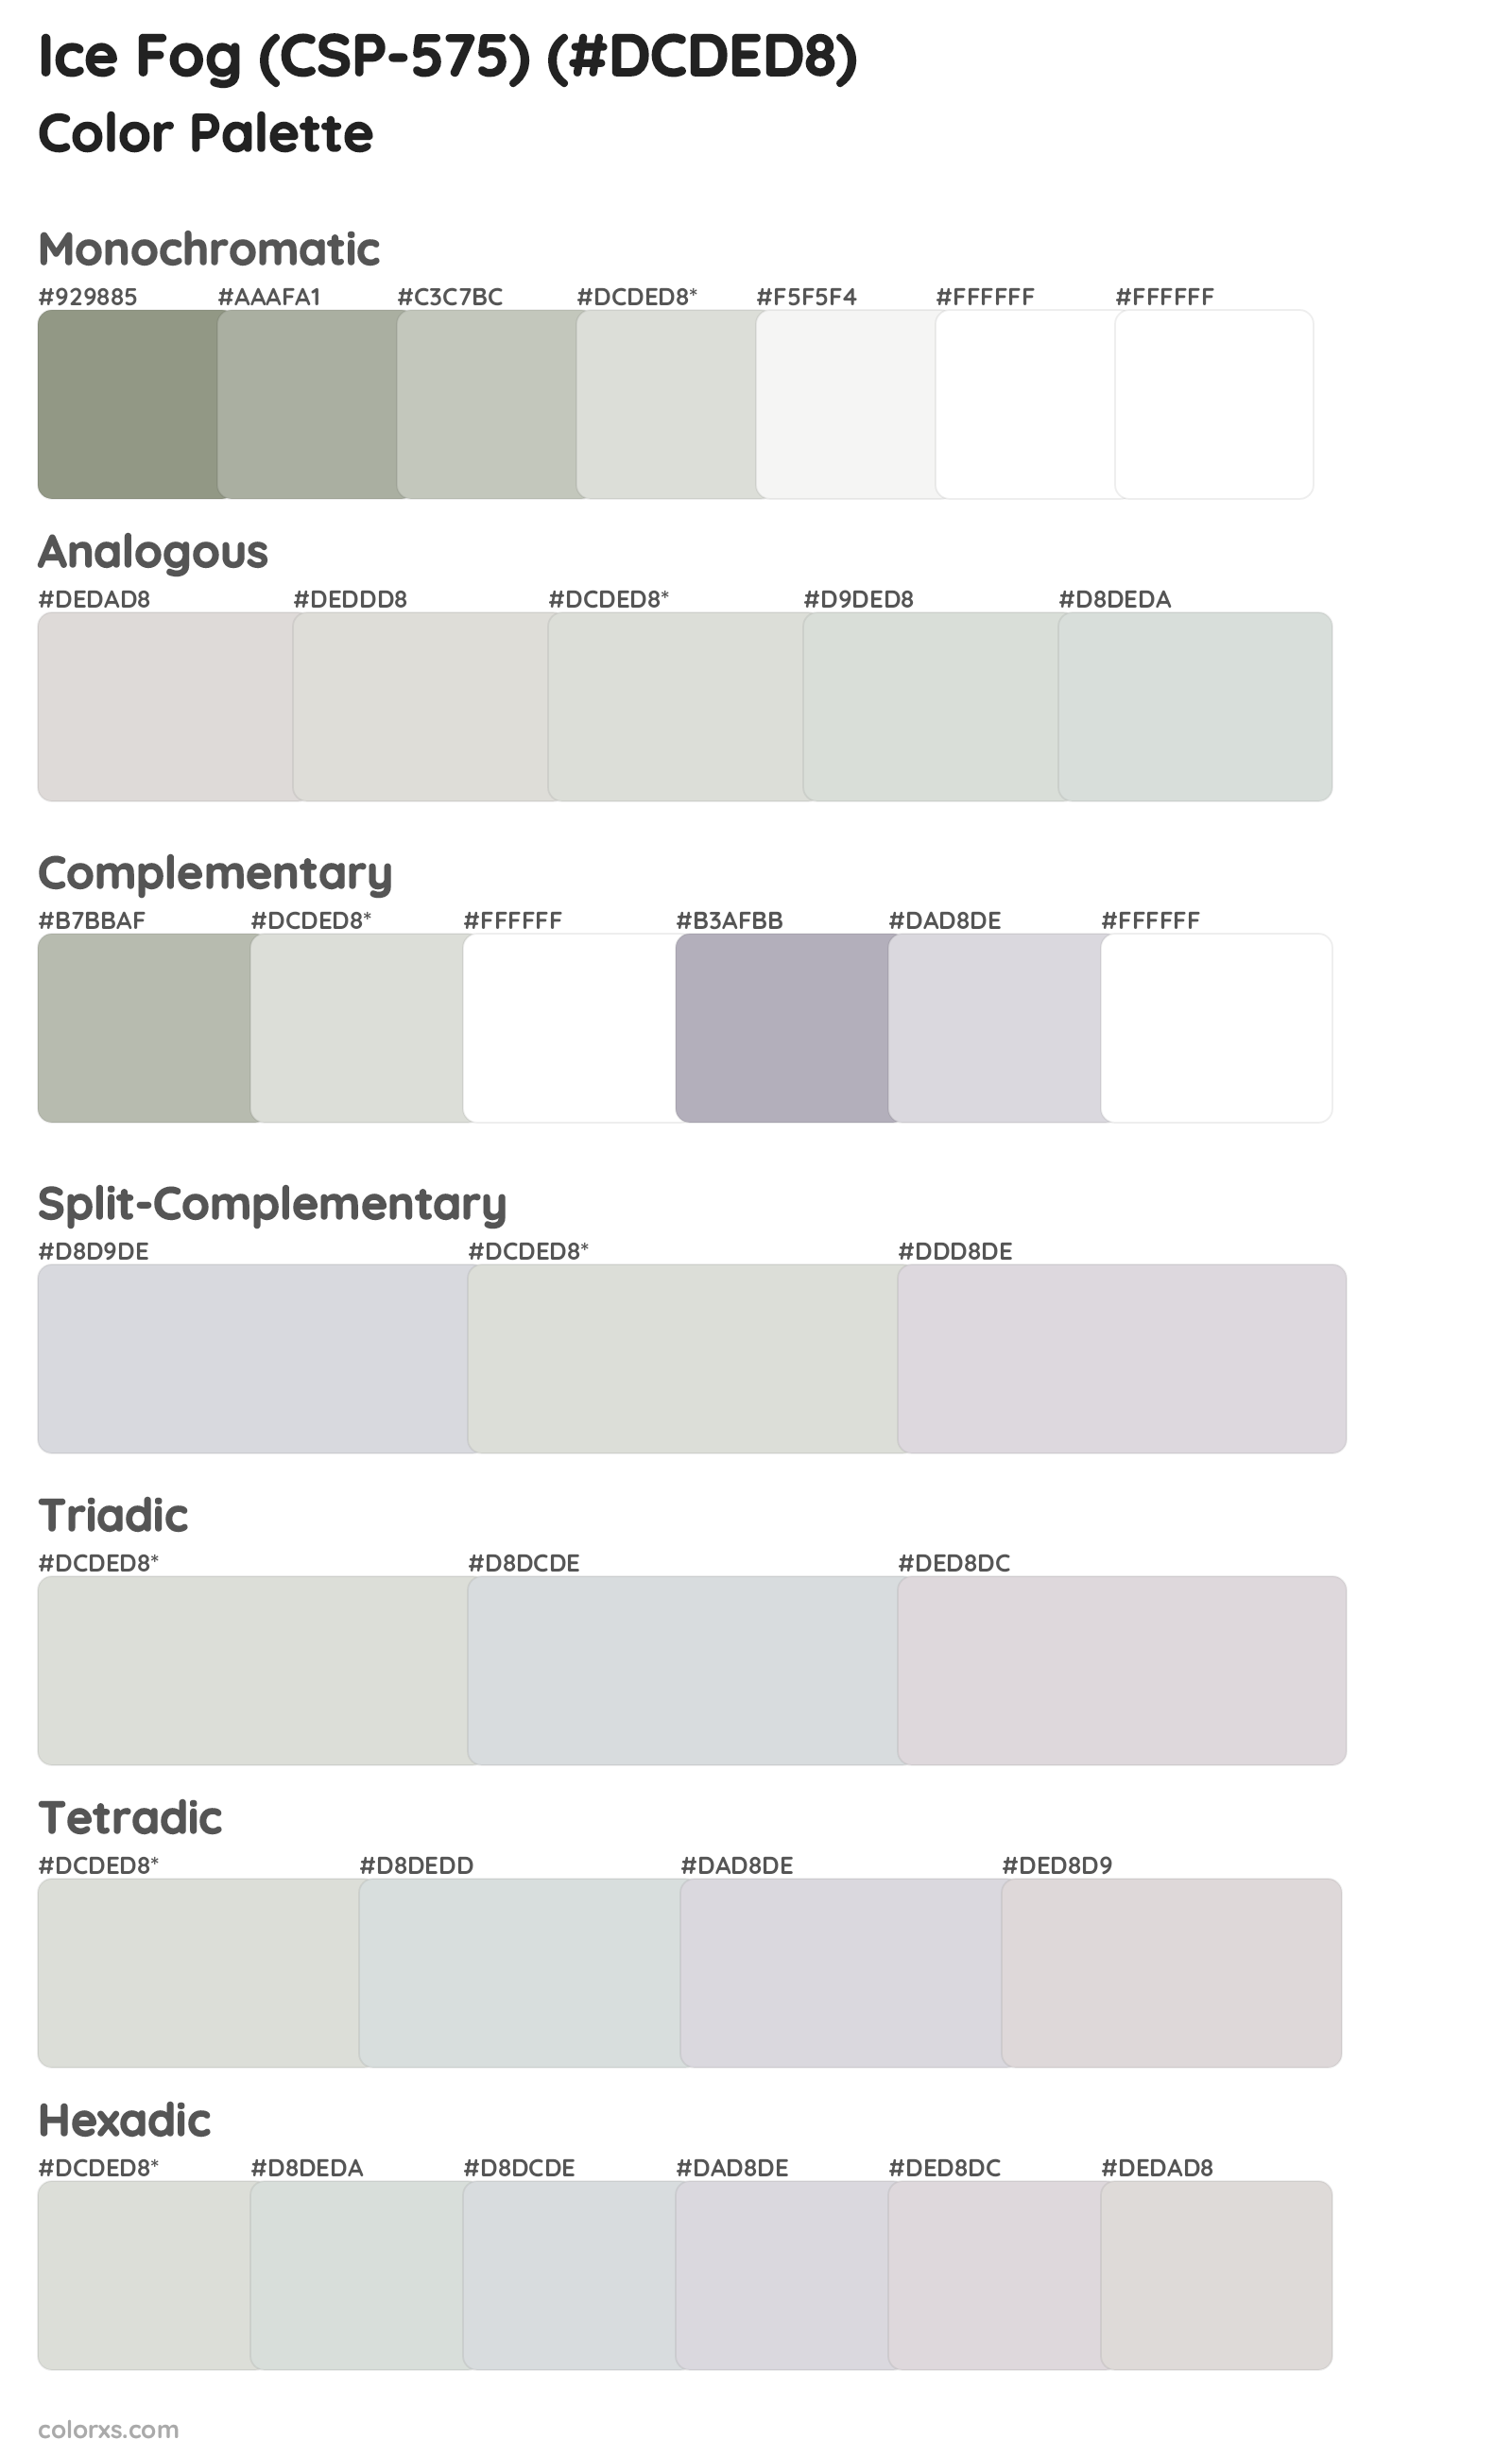 Ice Fog (CSP-575) Color Scheme Palettes